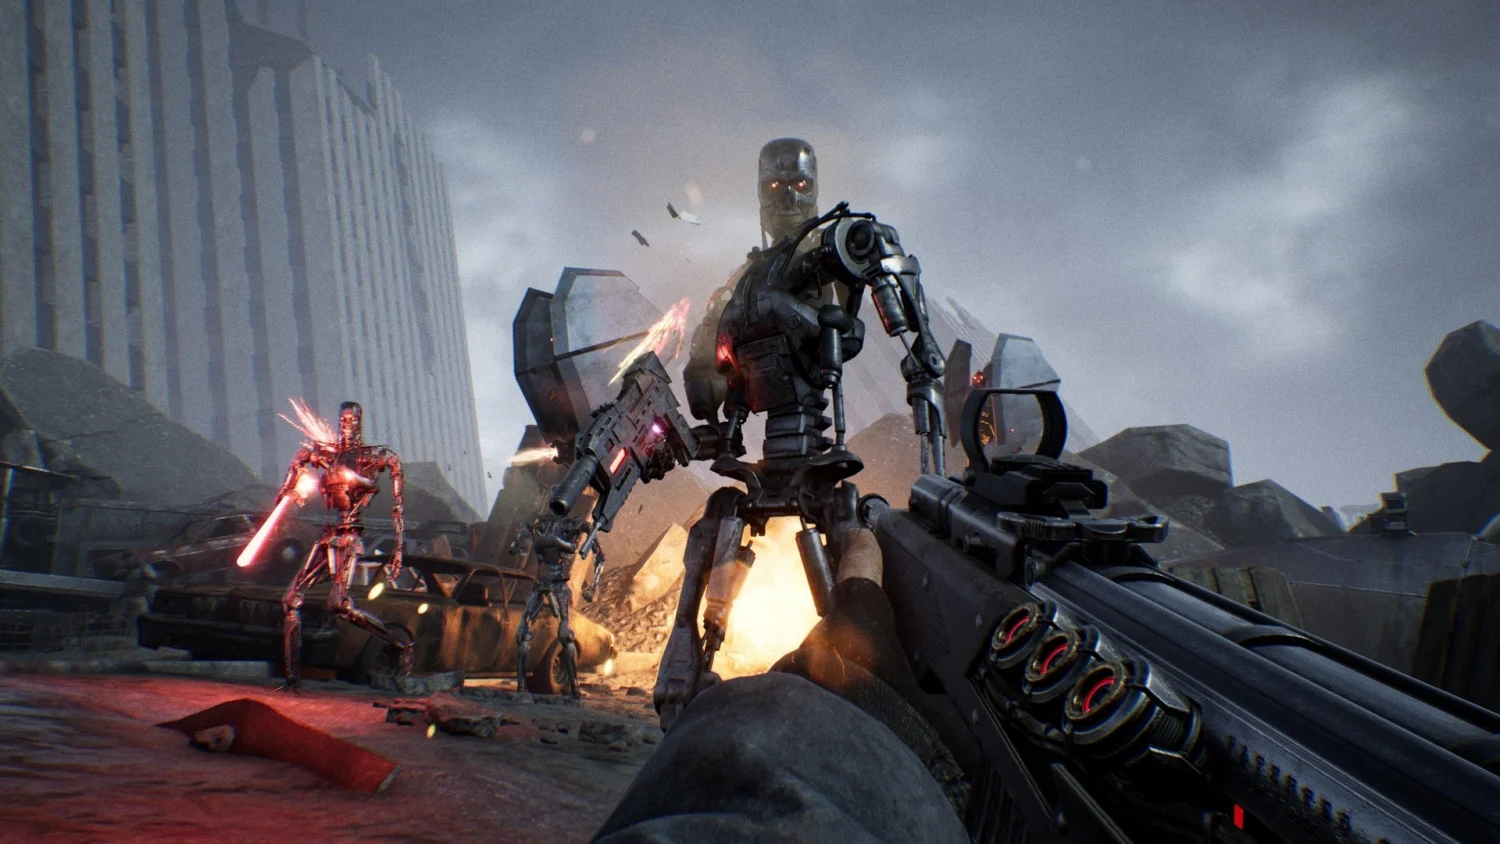 Jogo Terminator: Resistance Enhanced PS5